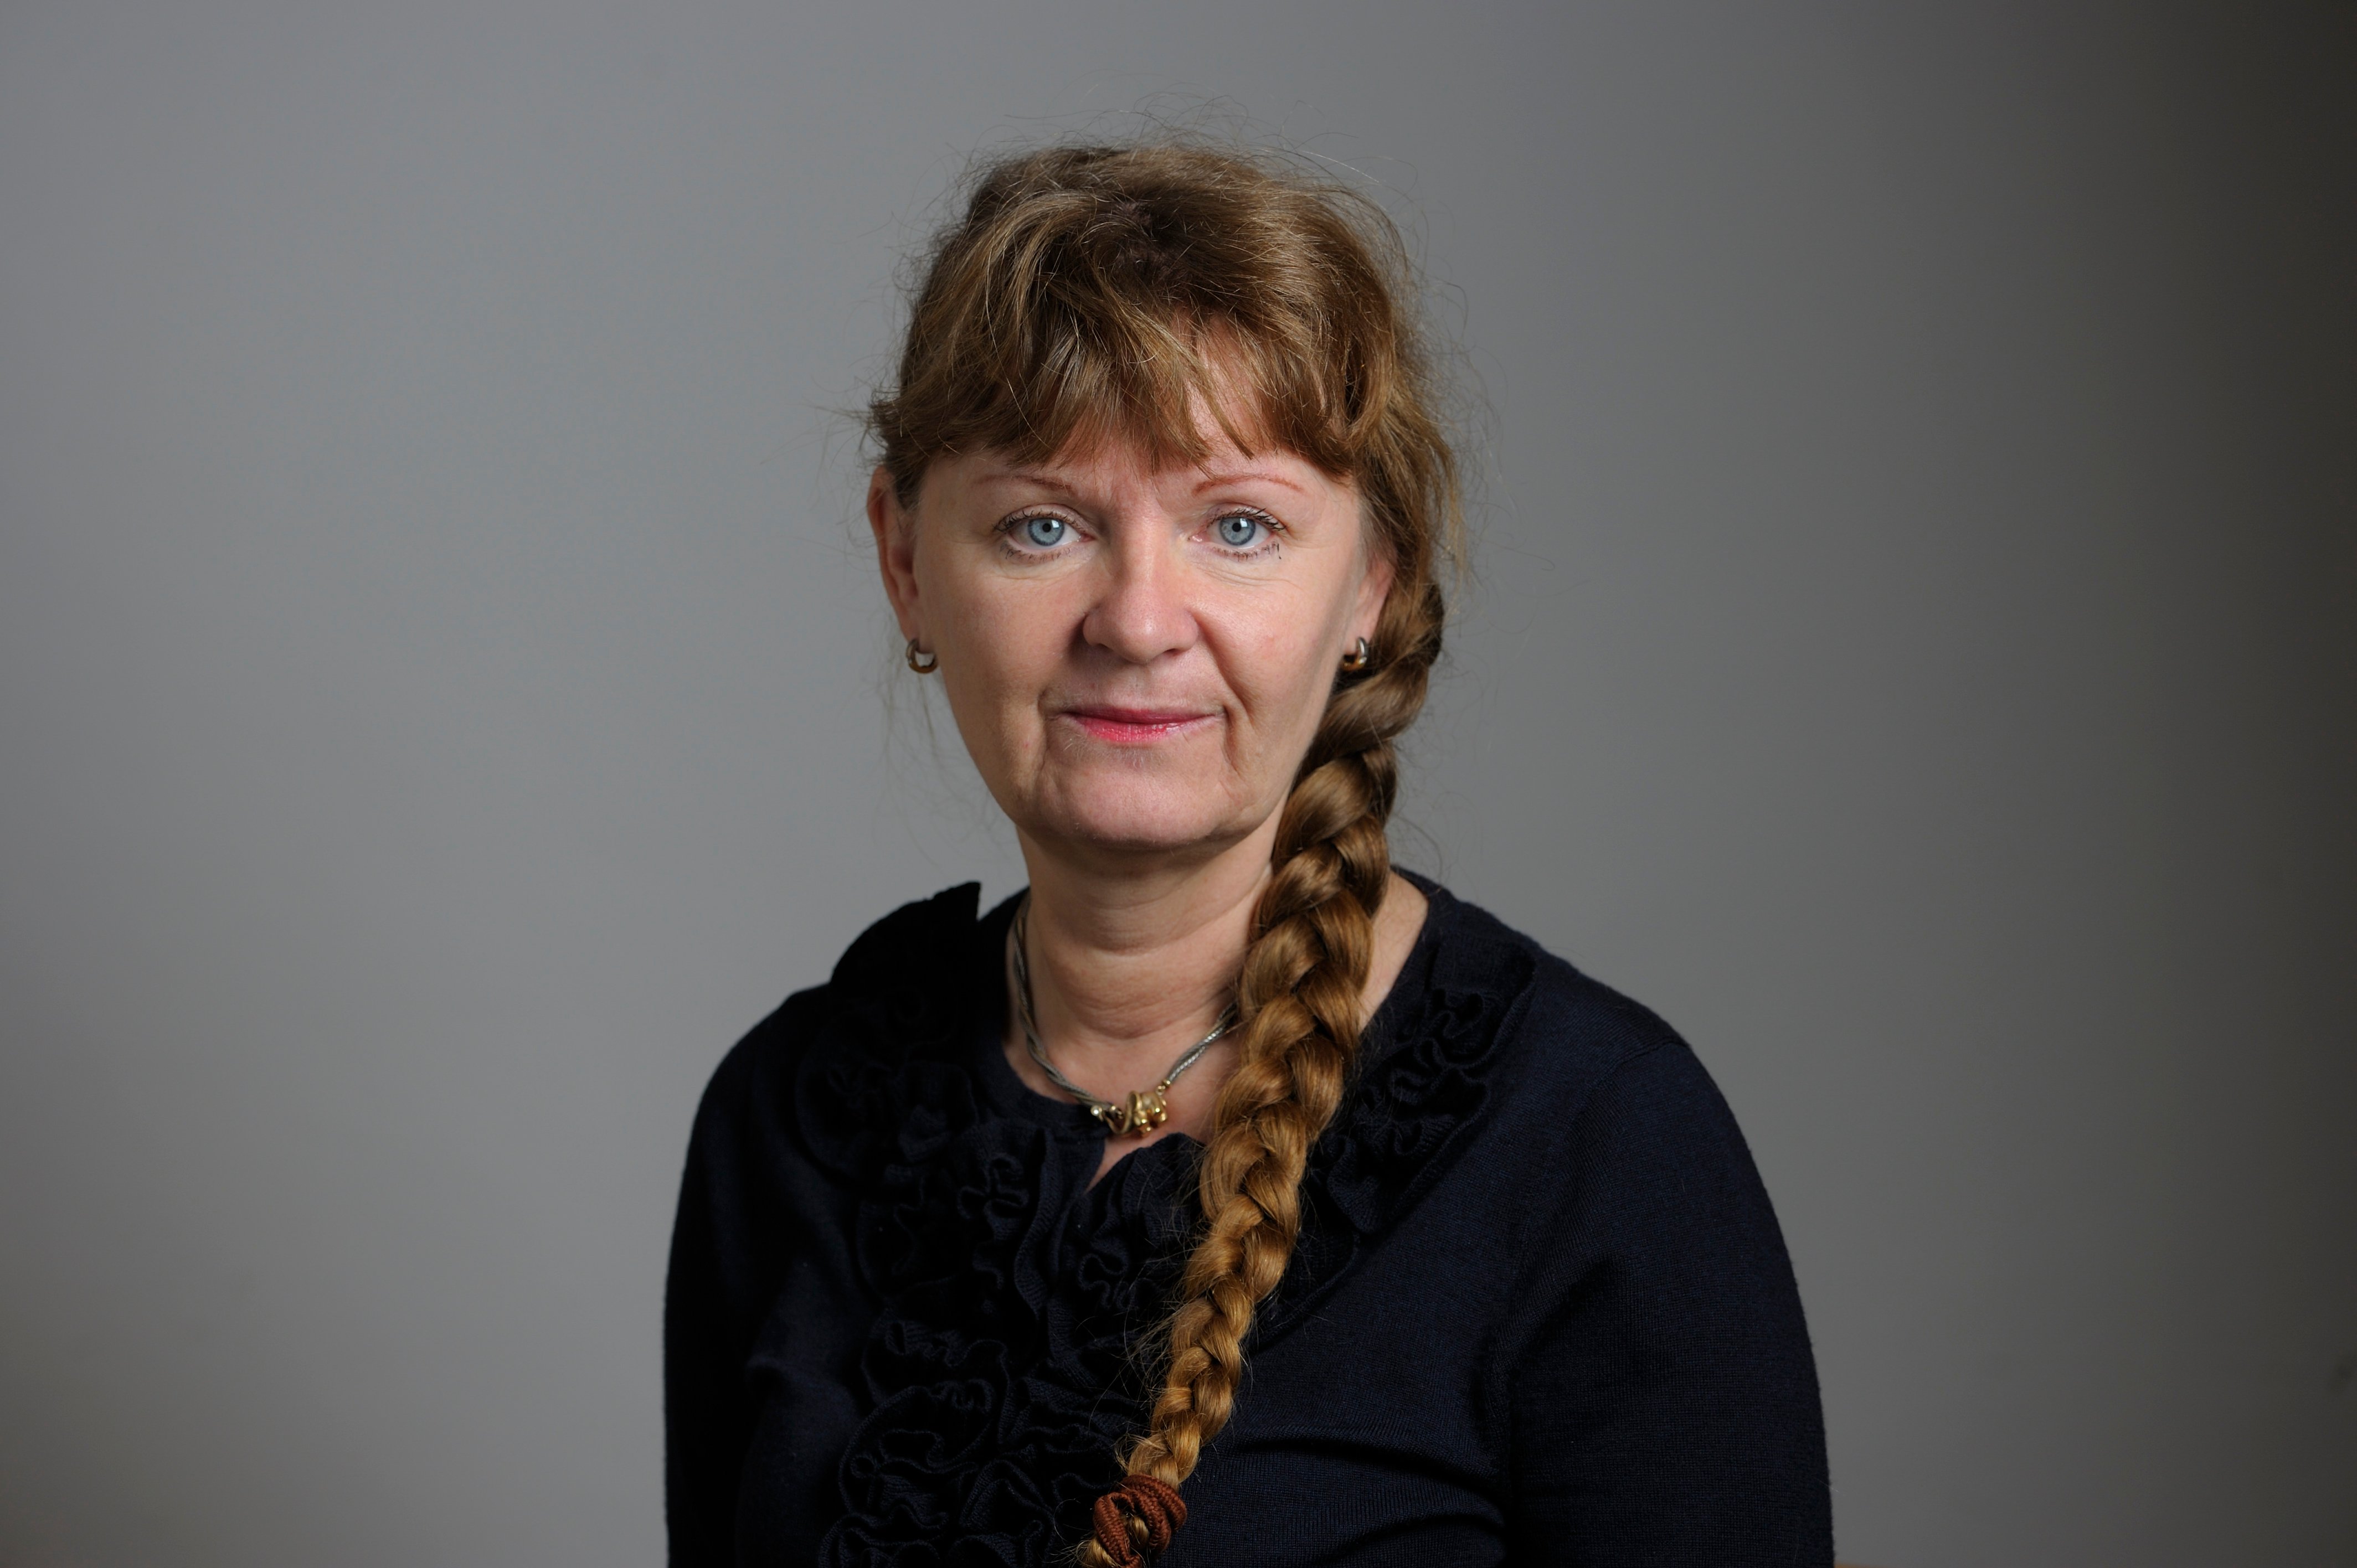 S-ledamoten Carina Hägg stod också som frånvarande – men menar att hennes knapp inte fungerade.